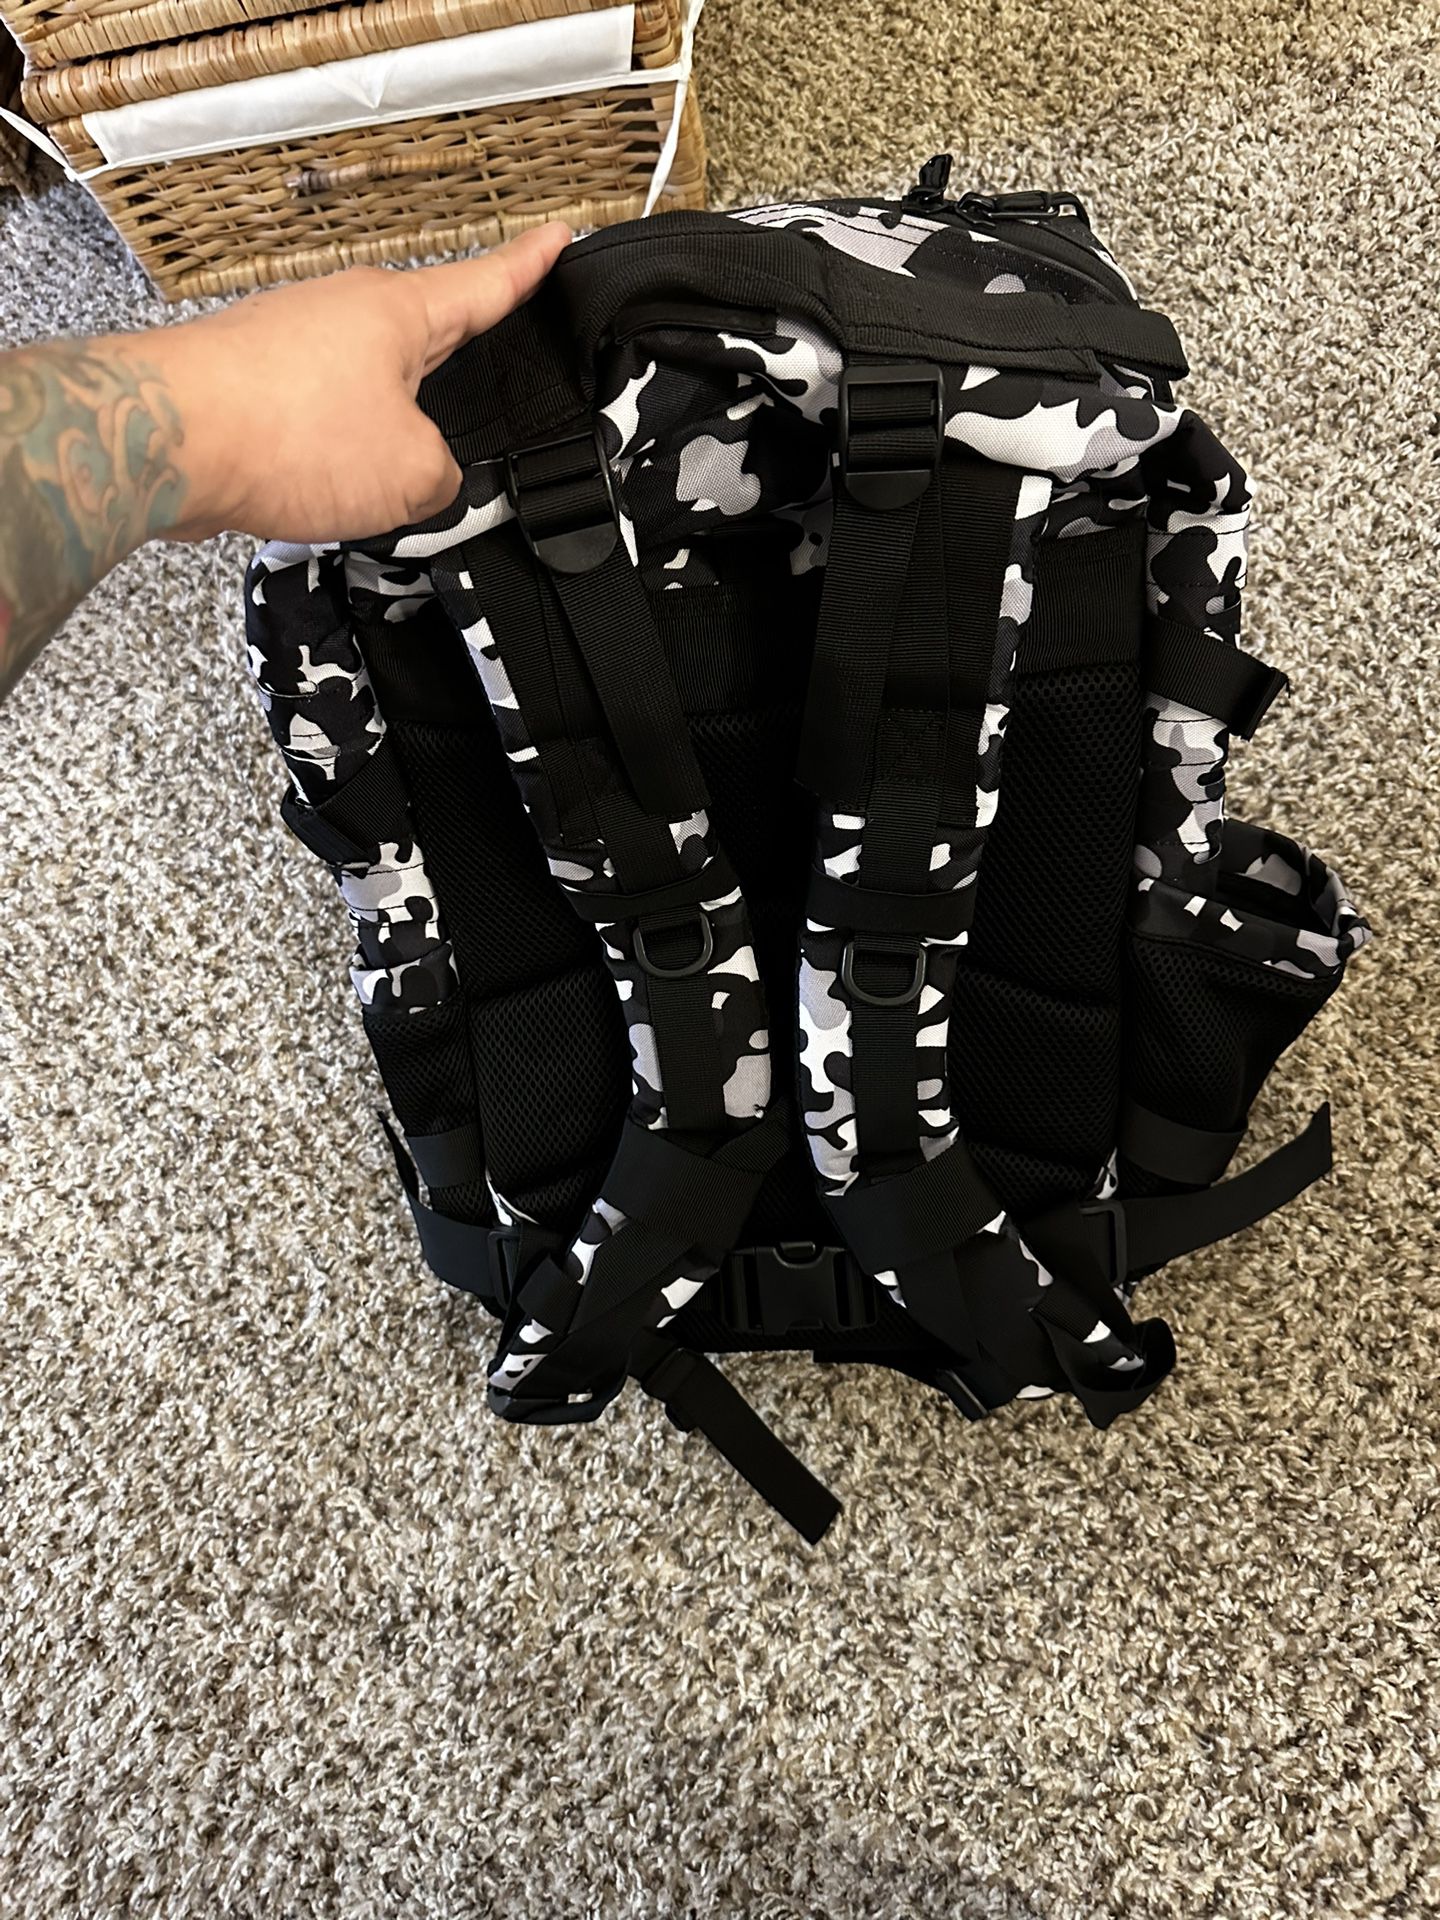 45L Backpack Built For Athletes